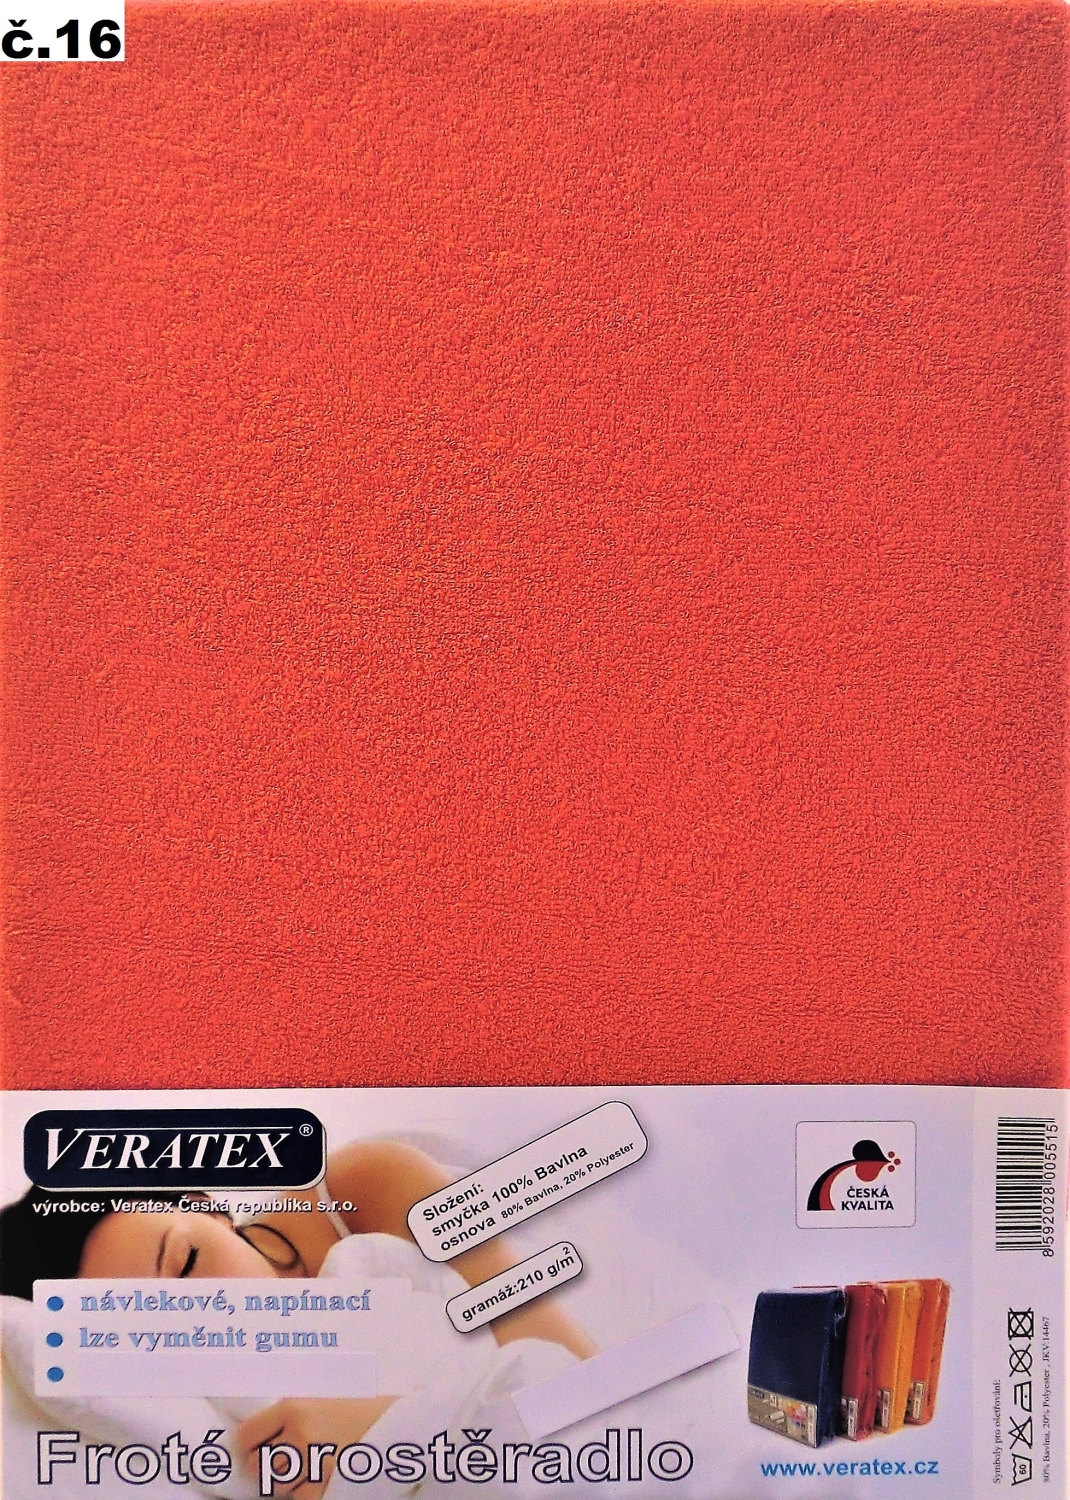 Veratex Froté prostěradlo 100x220/16 cm (č.16 malina)